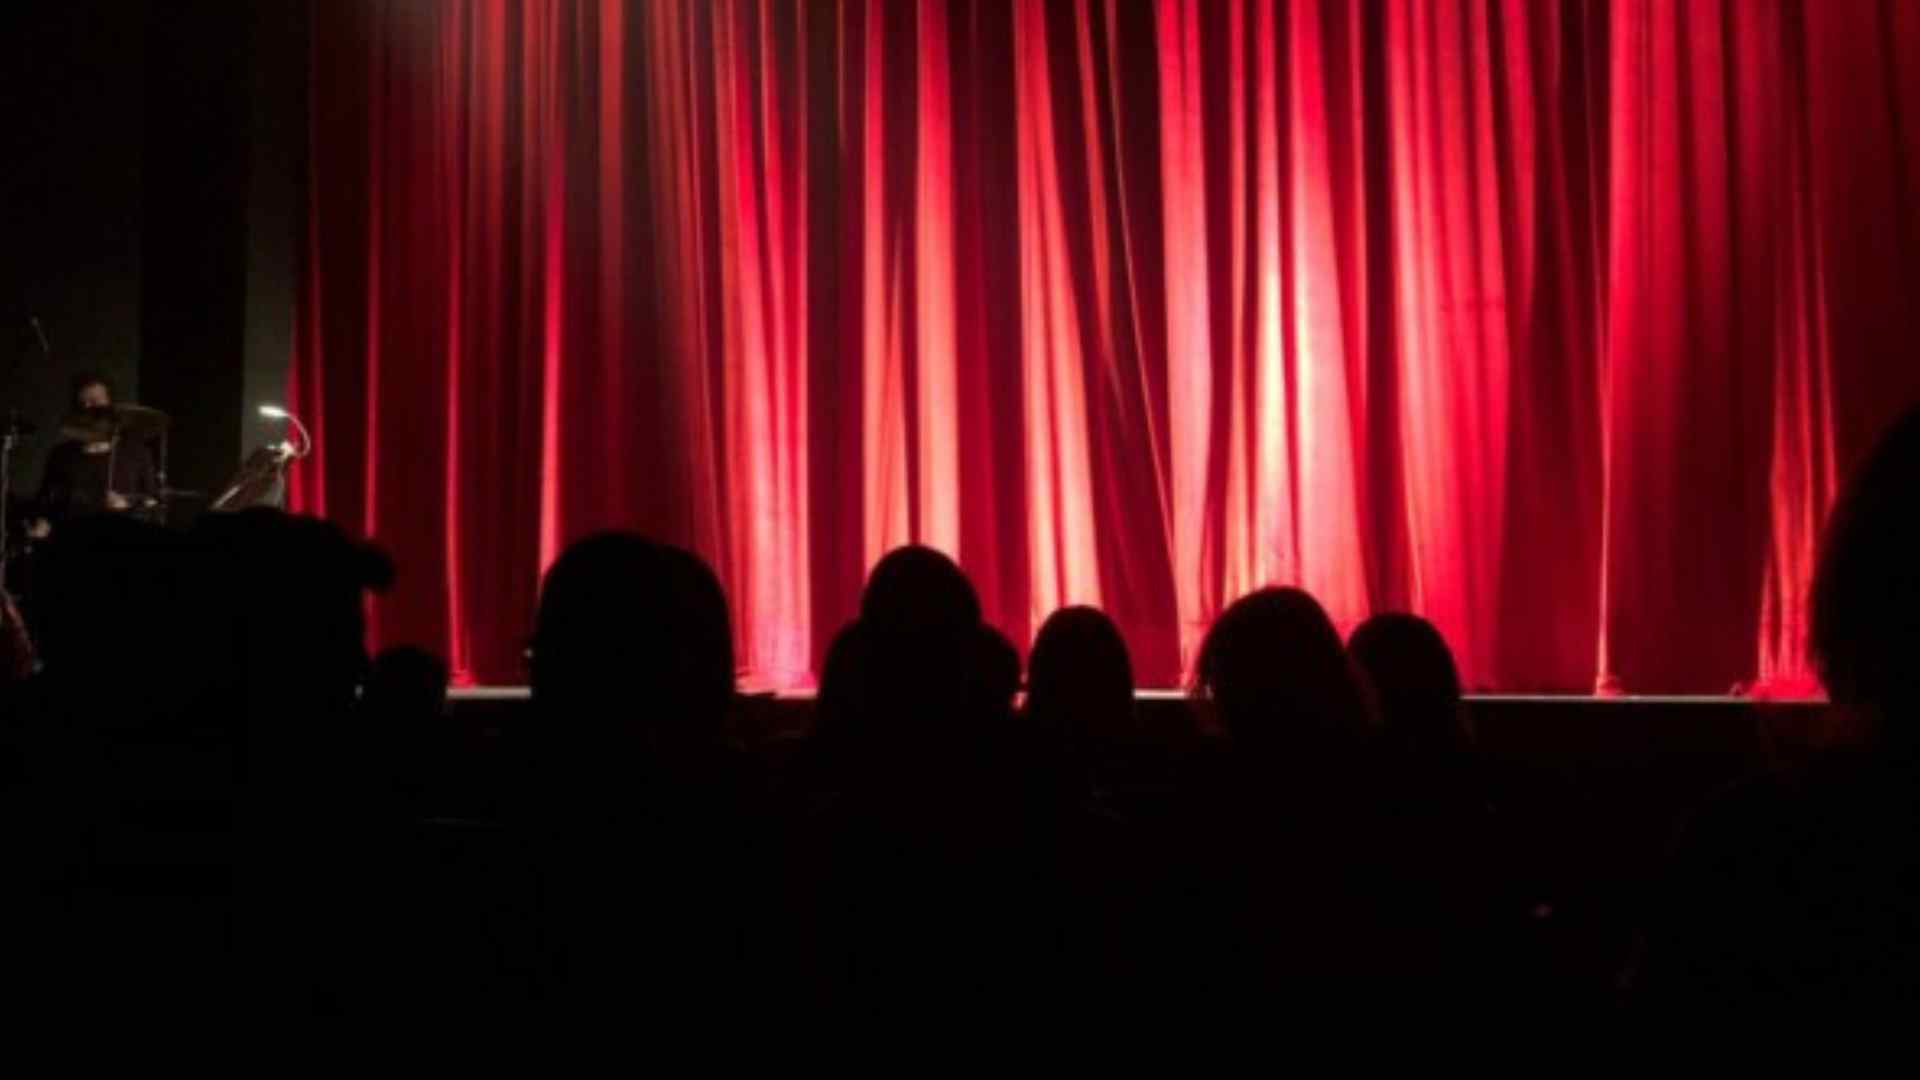 Public assis devant une scène avec des rideaux rouges, attend que le spectacle démarre